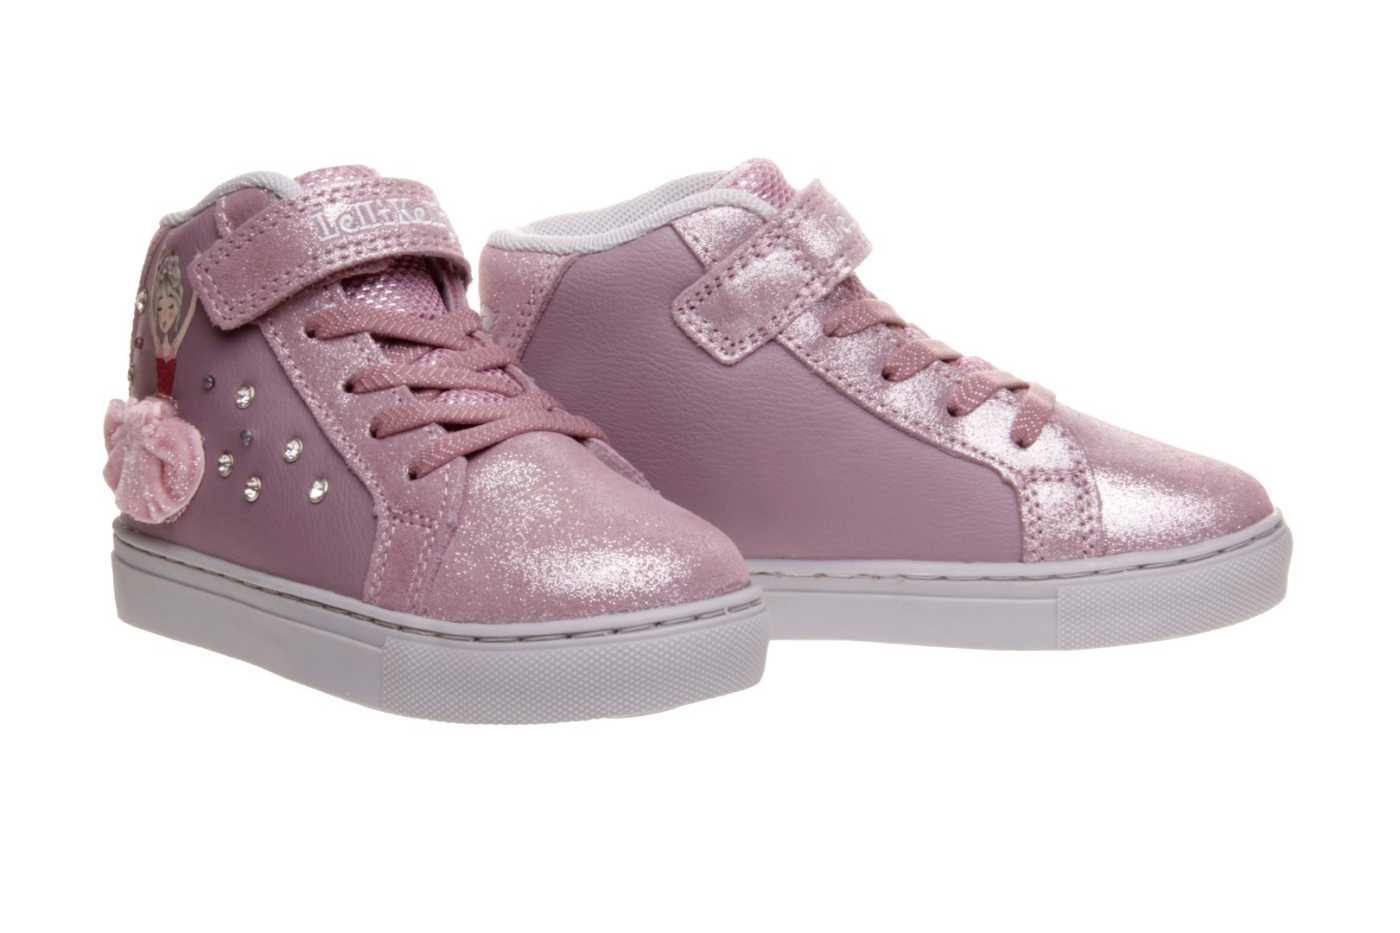 zapato LELLI KELLY para NIÑA estilo BOTAS color EMPOLVADO PIEL